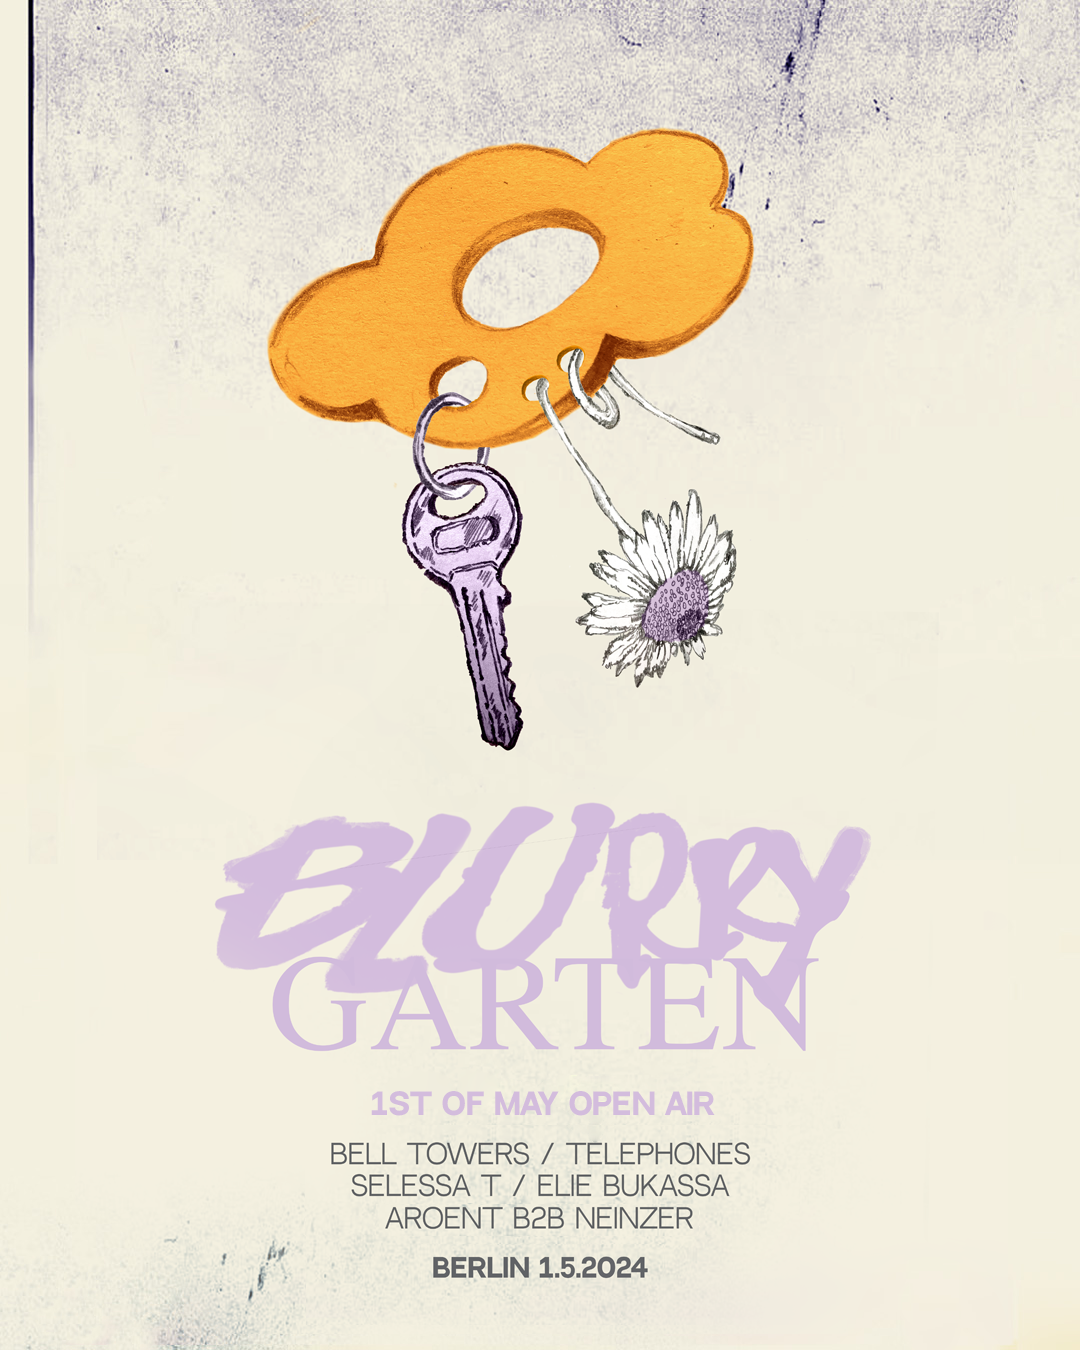 Blurry Garten with Telephones, Bell Towers, Aroent B2B Neinzer, SELESSA T., Elie Bukassa - フライヤー表